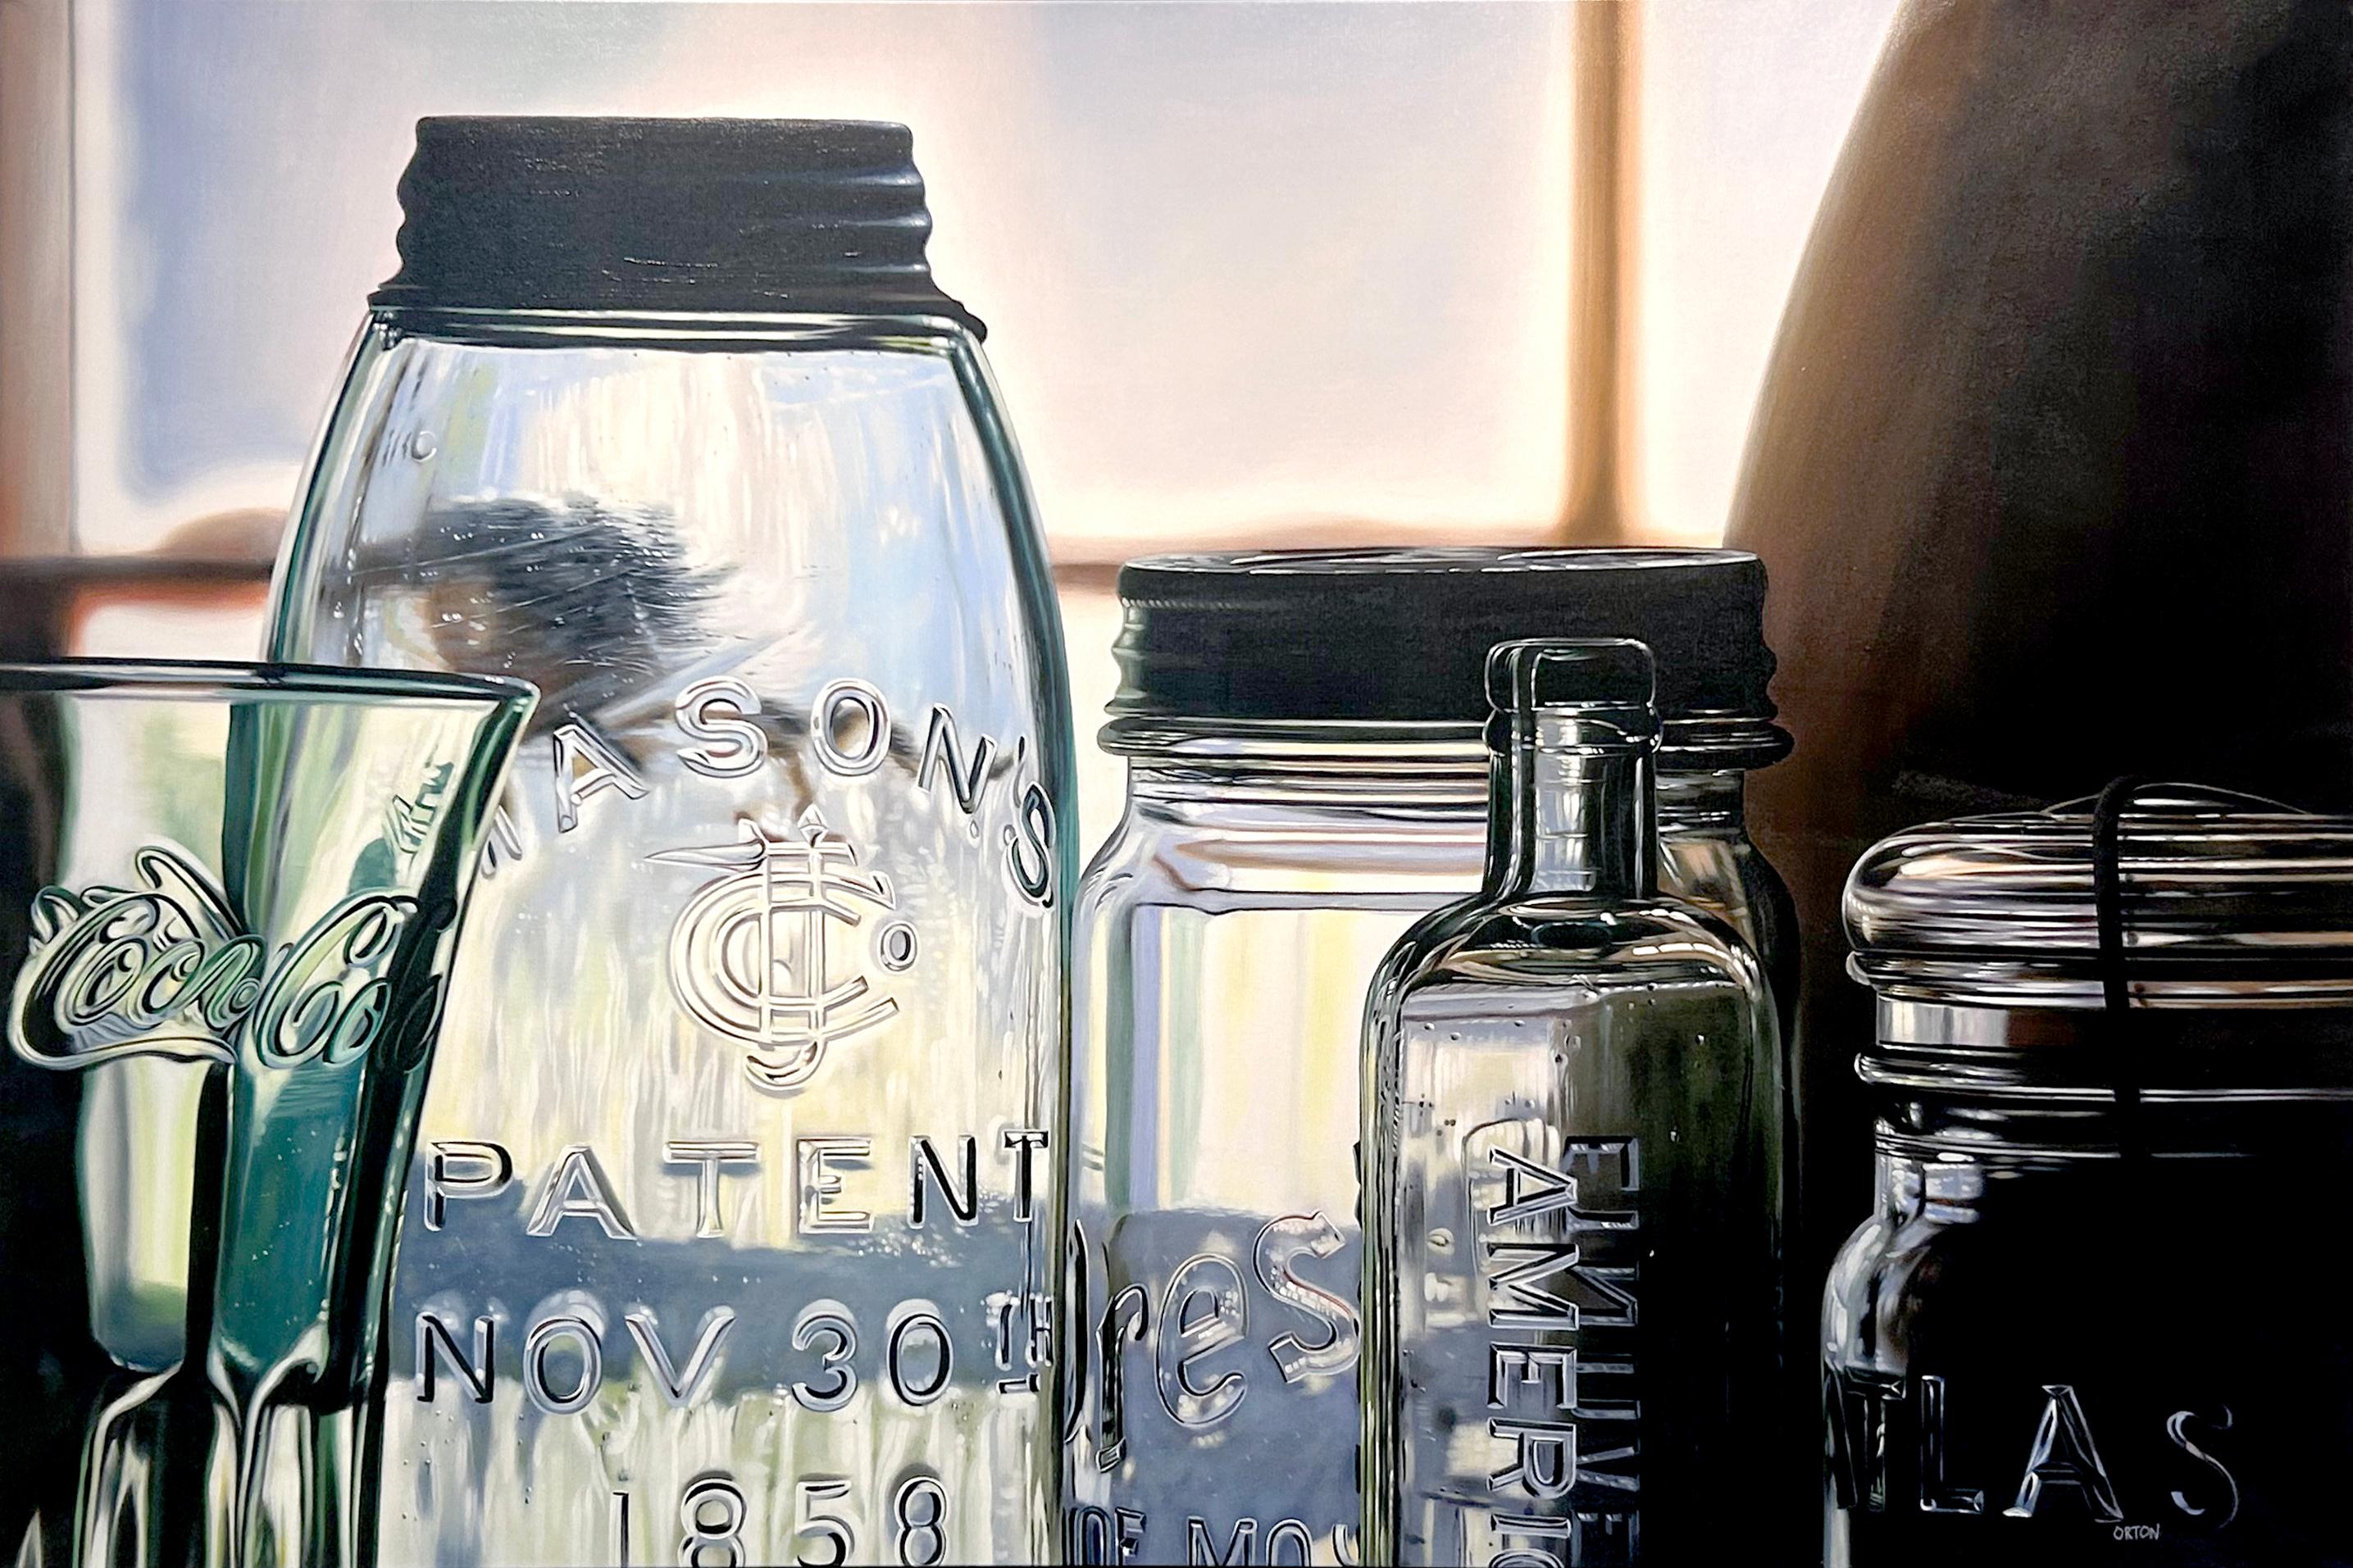 Ken Orton's "Patent Image" ist ein 40x60 Original-Ölgemälde auf Leinwand. Dieses Gemälde zeigt ein Stillleben mit einer Gruppe von kristallklaren Gläsern und Flaschen. Zur Glassammlung gehören ein Coca-Cola-Glas, ein Presto-Glas, ein Mason-Glas und